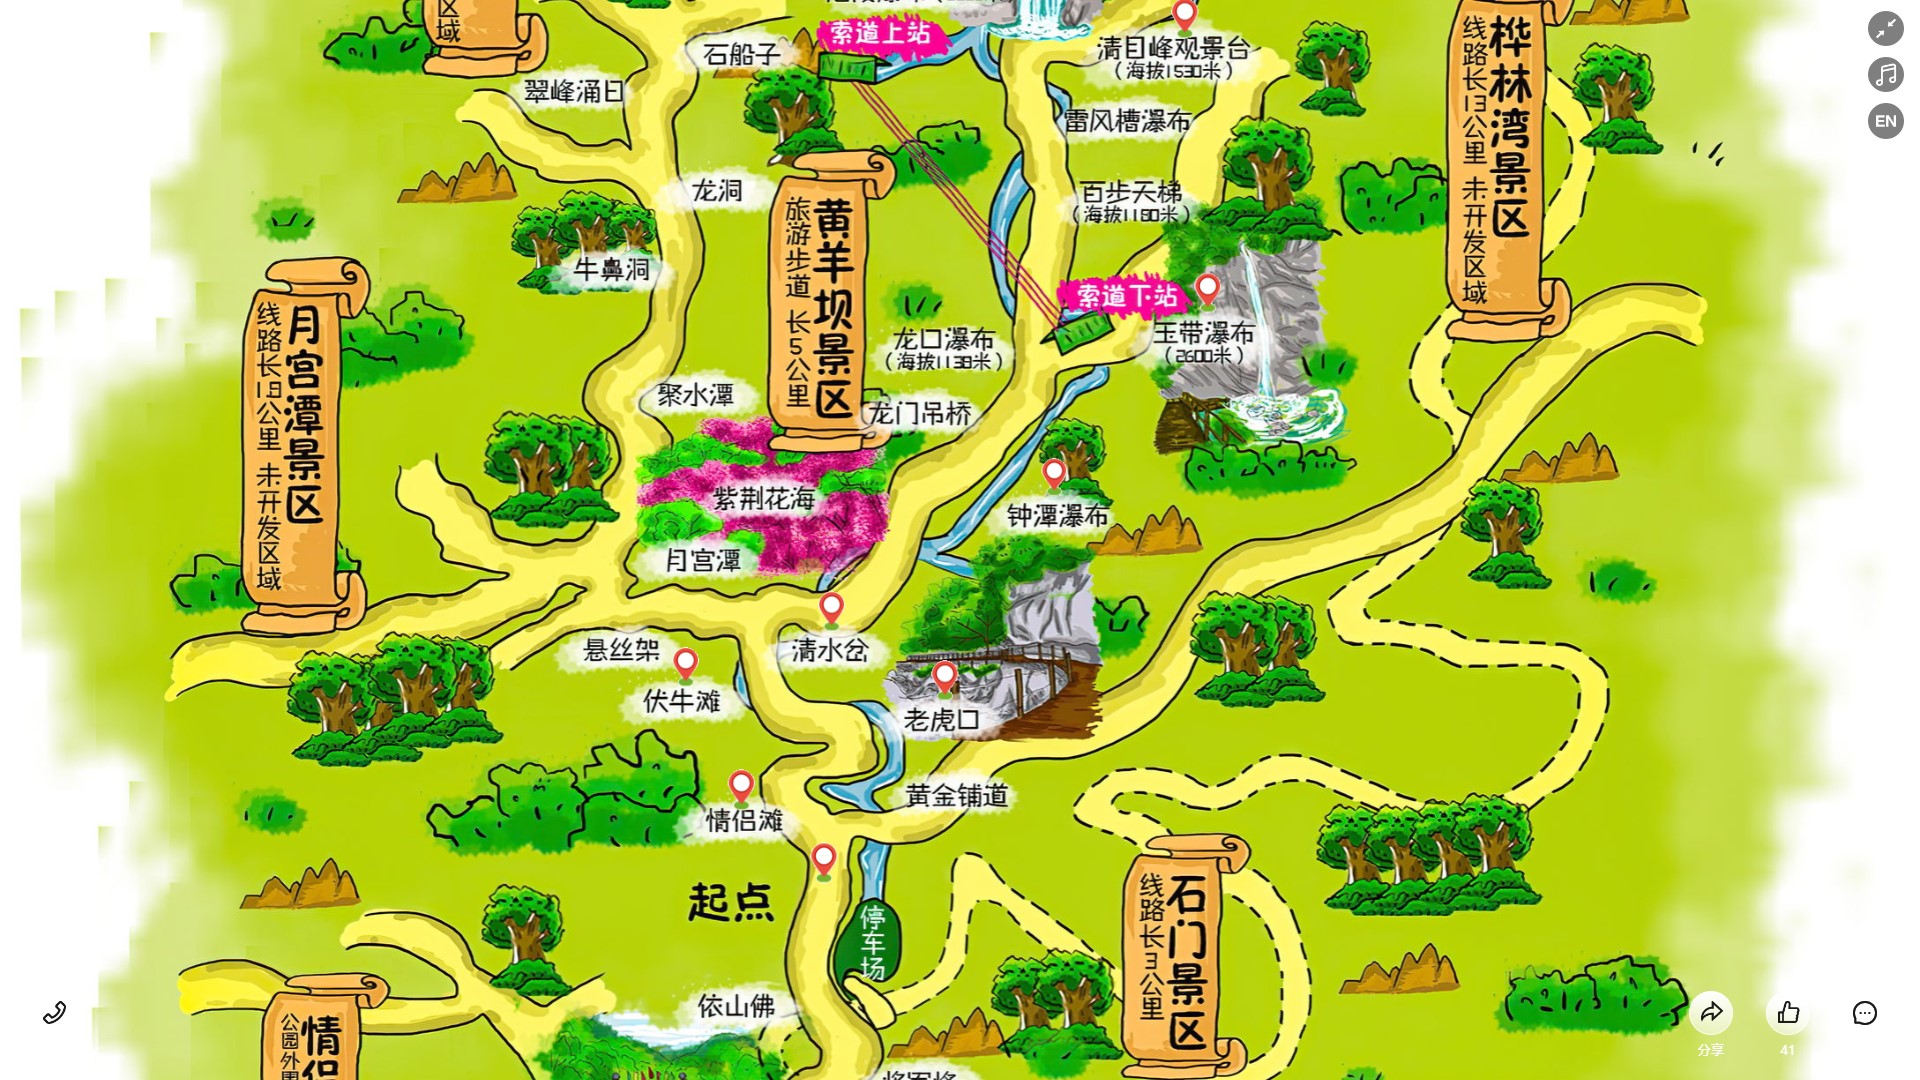 衡山景区导览系统